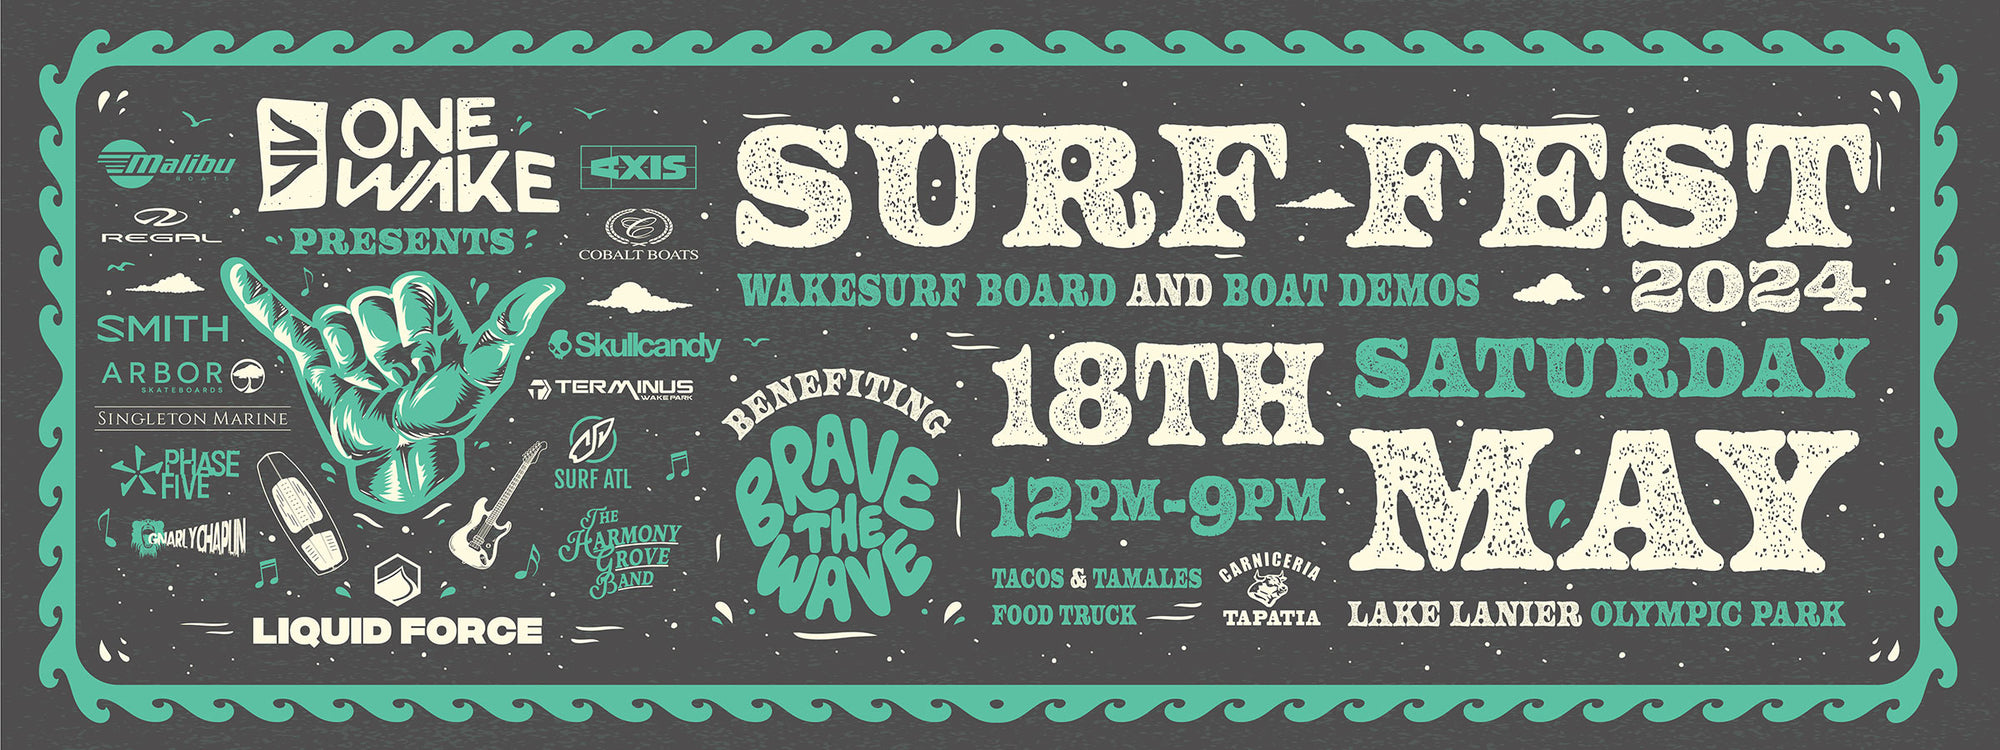 Surf Fest Wakesurf Board and Boat Demos